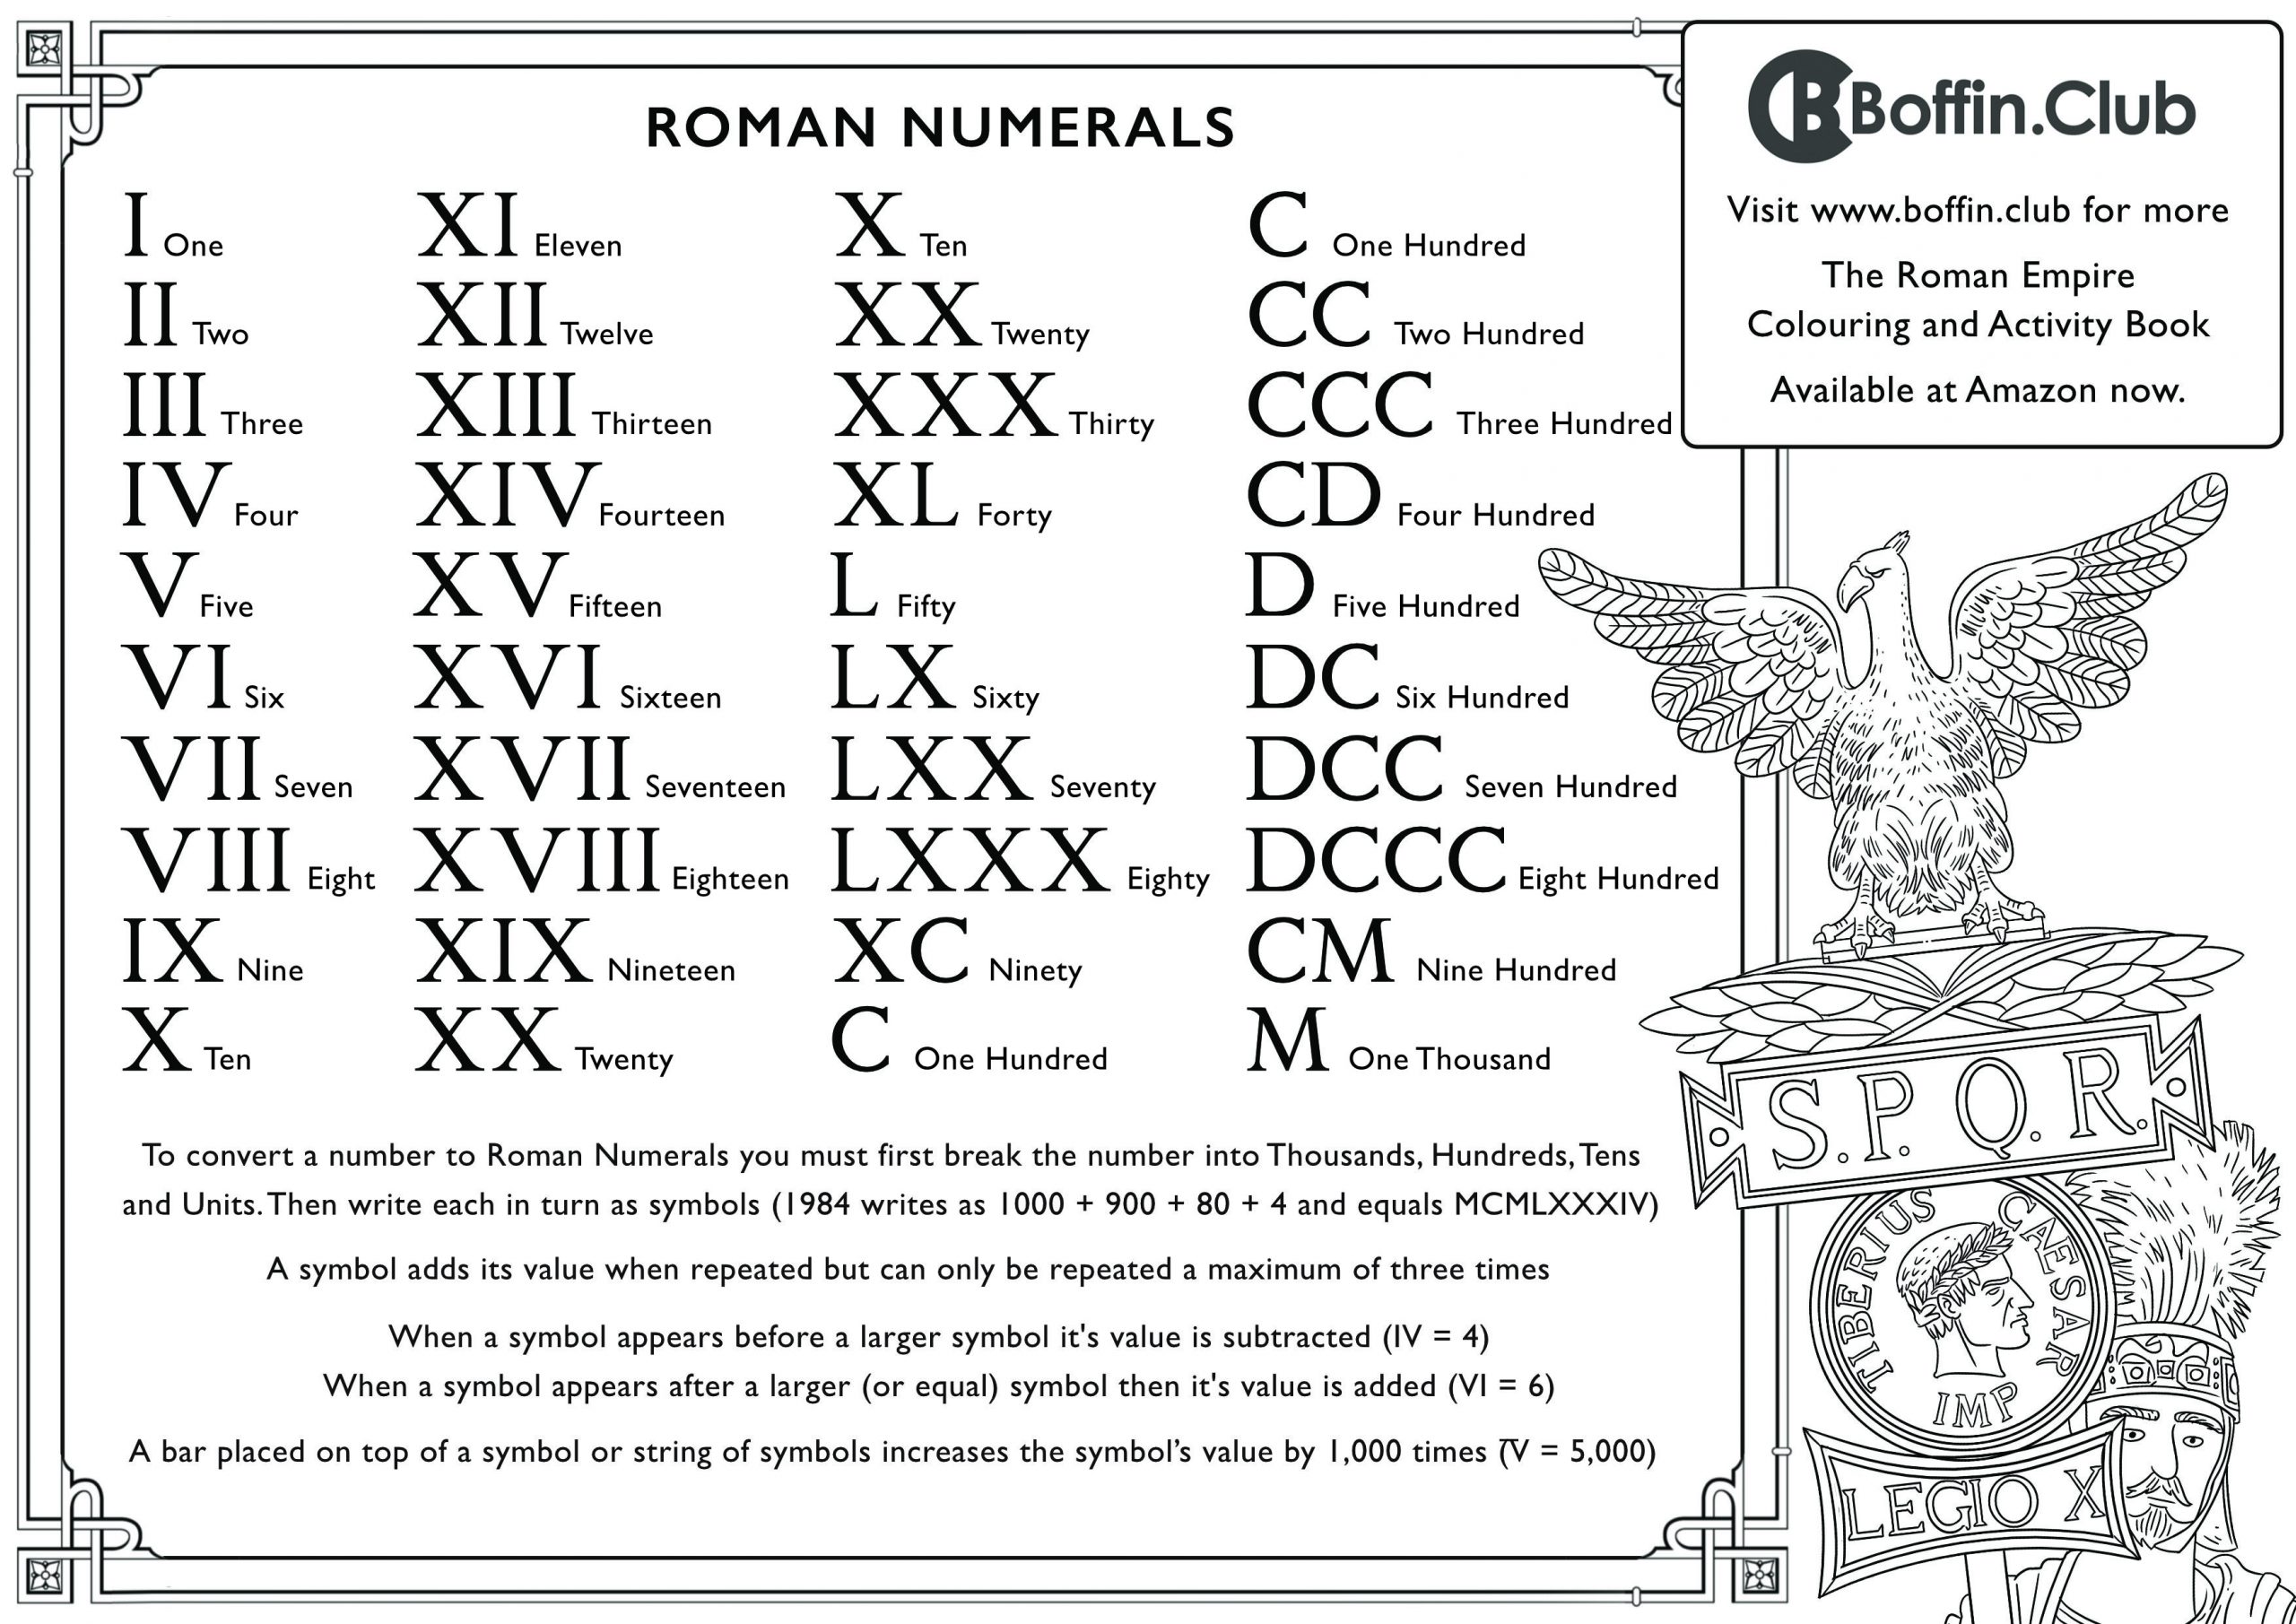 Roman Empire Colouring Sheet